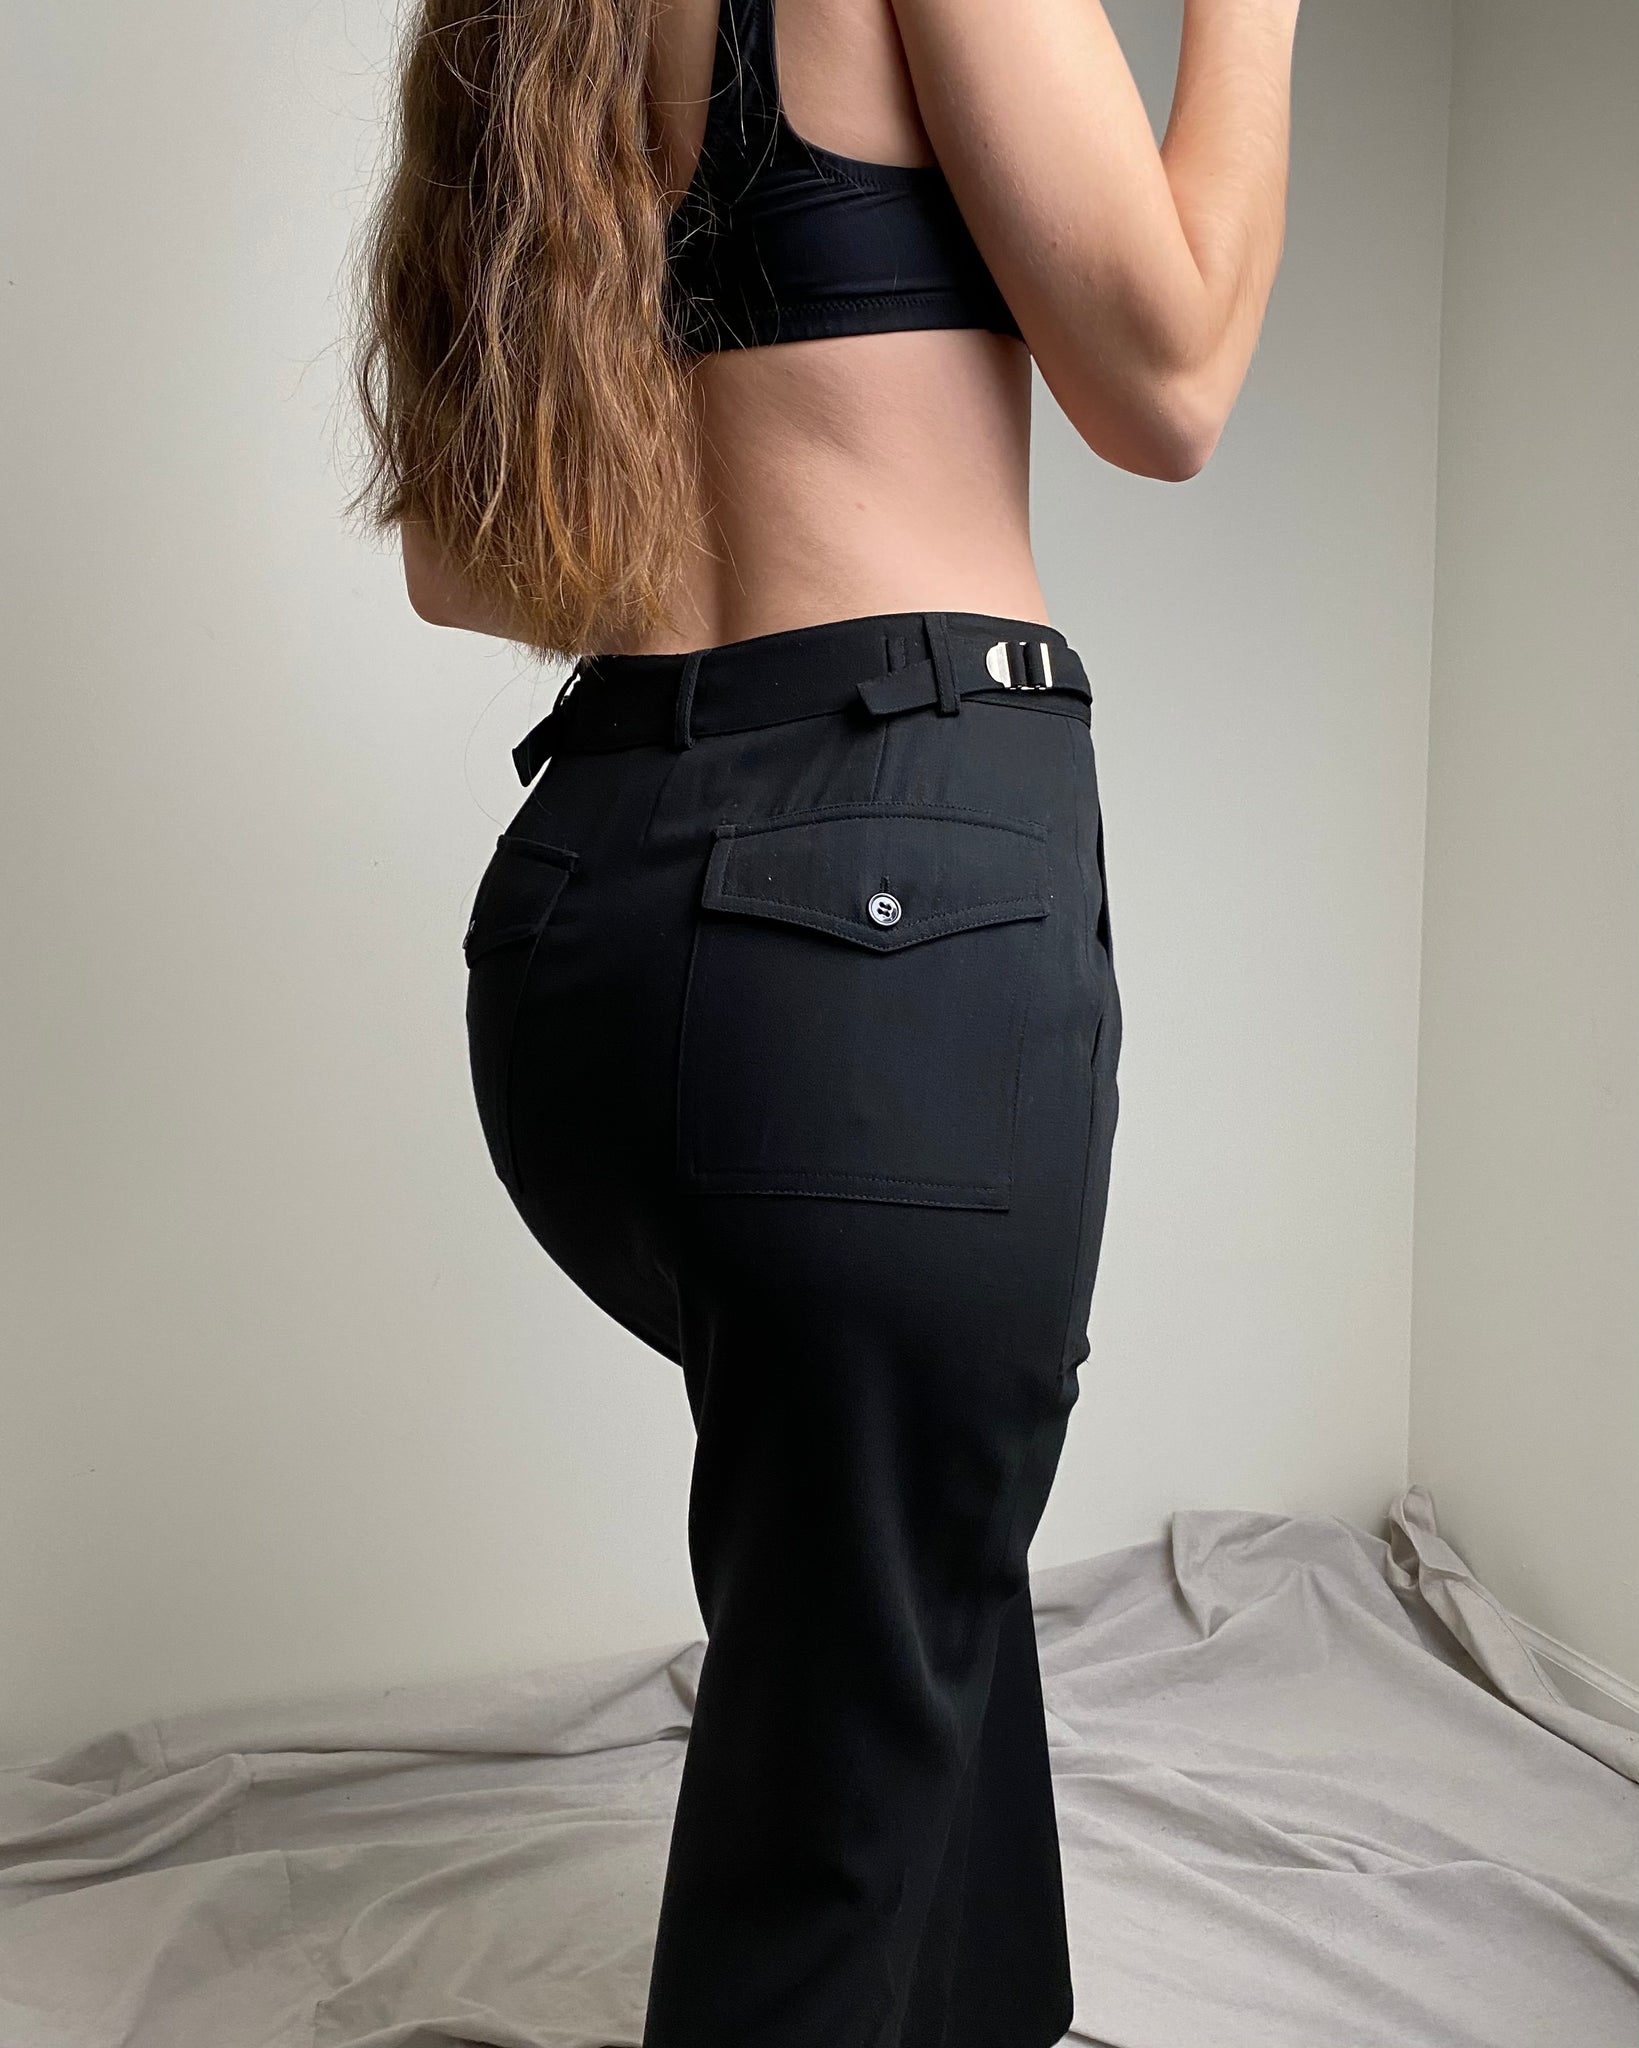 90s Black Maxi Skirt Suit (size 4)